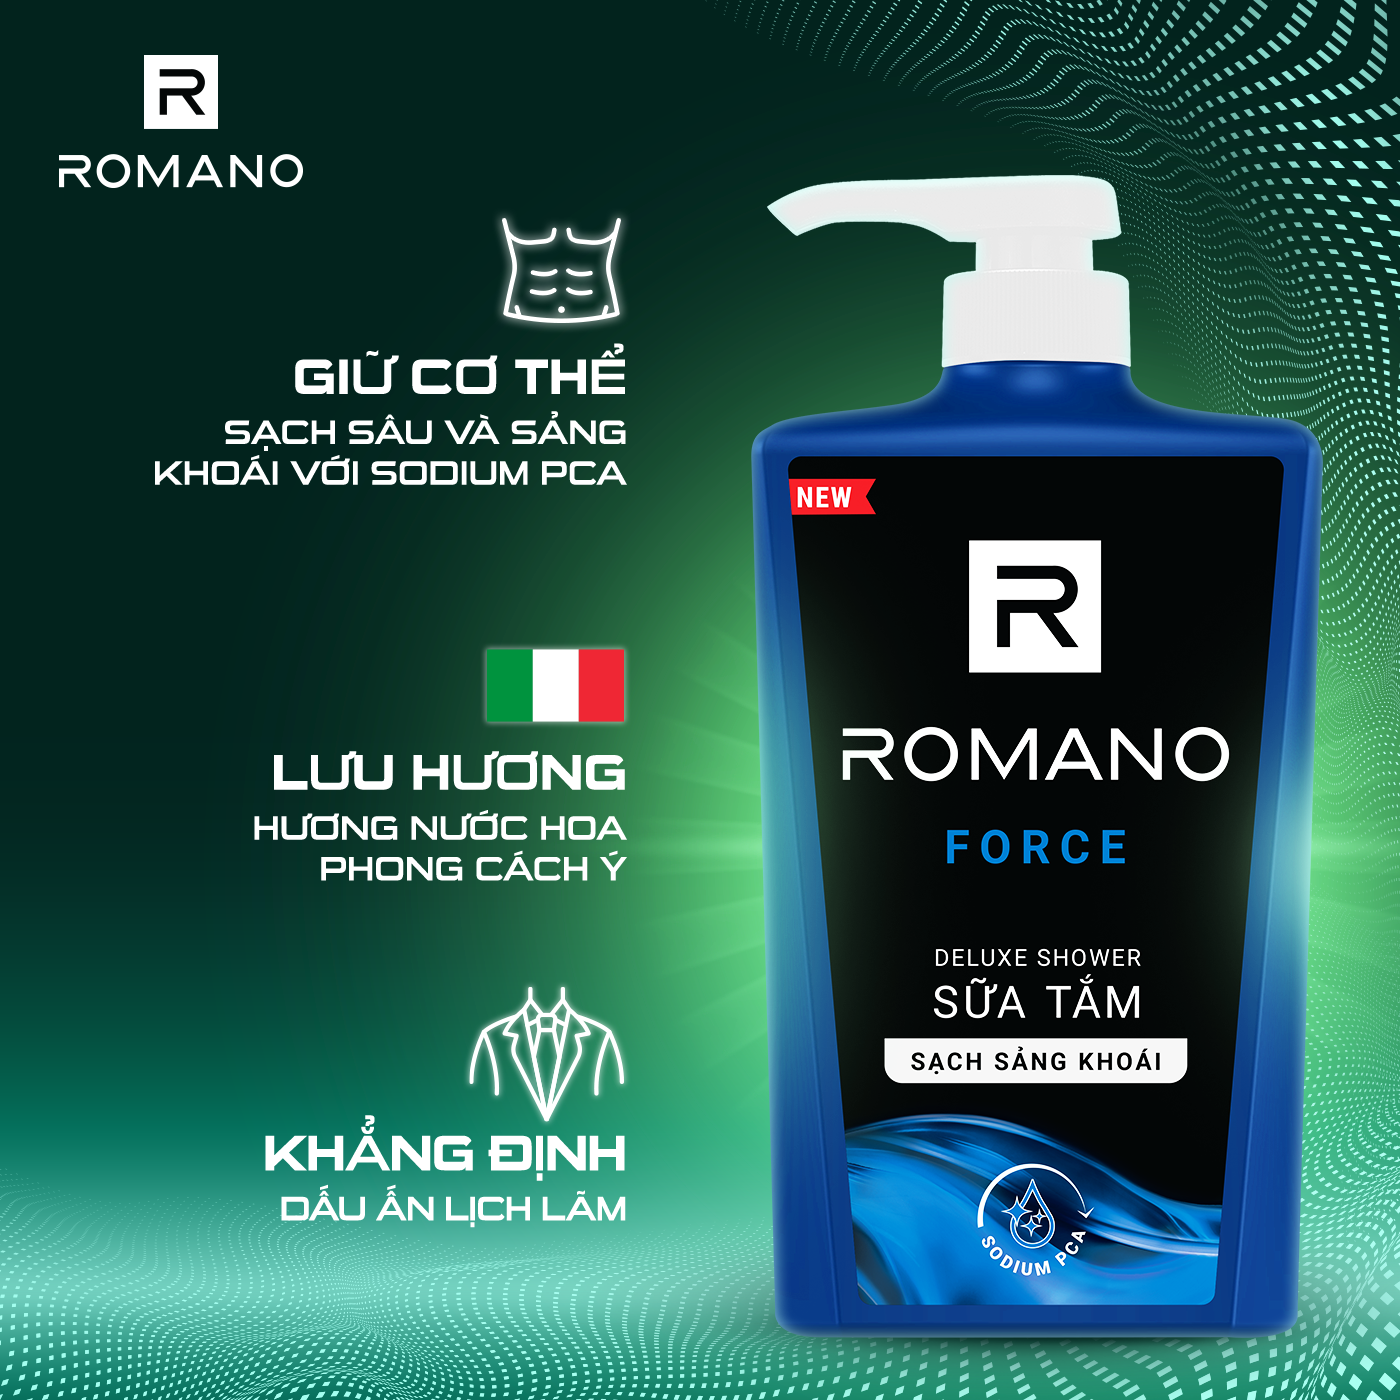 Sữa tắm cao cấp Romano Force mạnh mẽ tự tin sạch sảng khoái 650gr